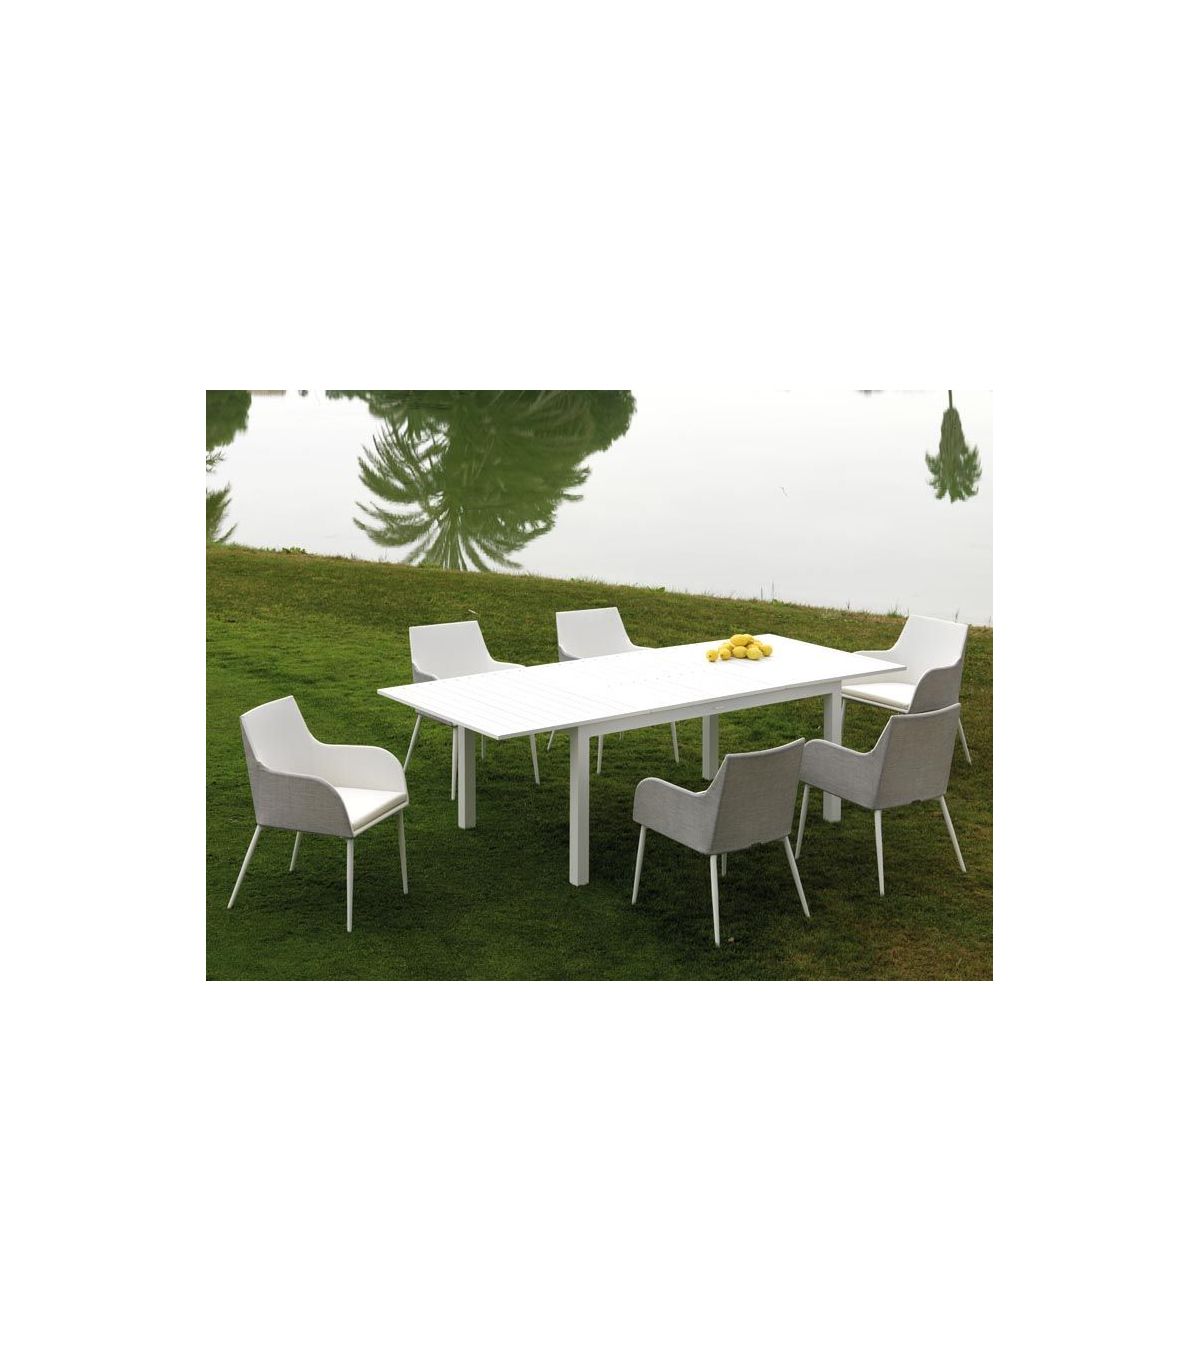 El set ideal para terrazas, con mesa extensible - Muebles Jardín 